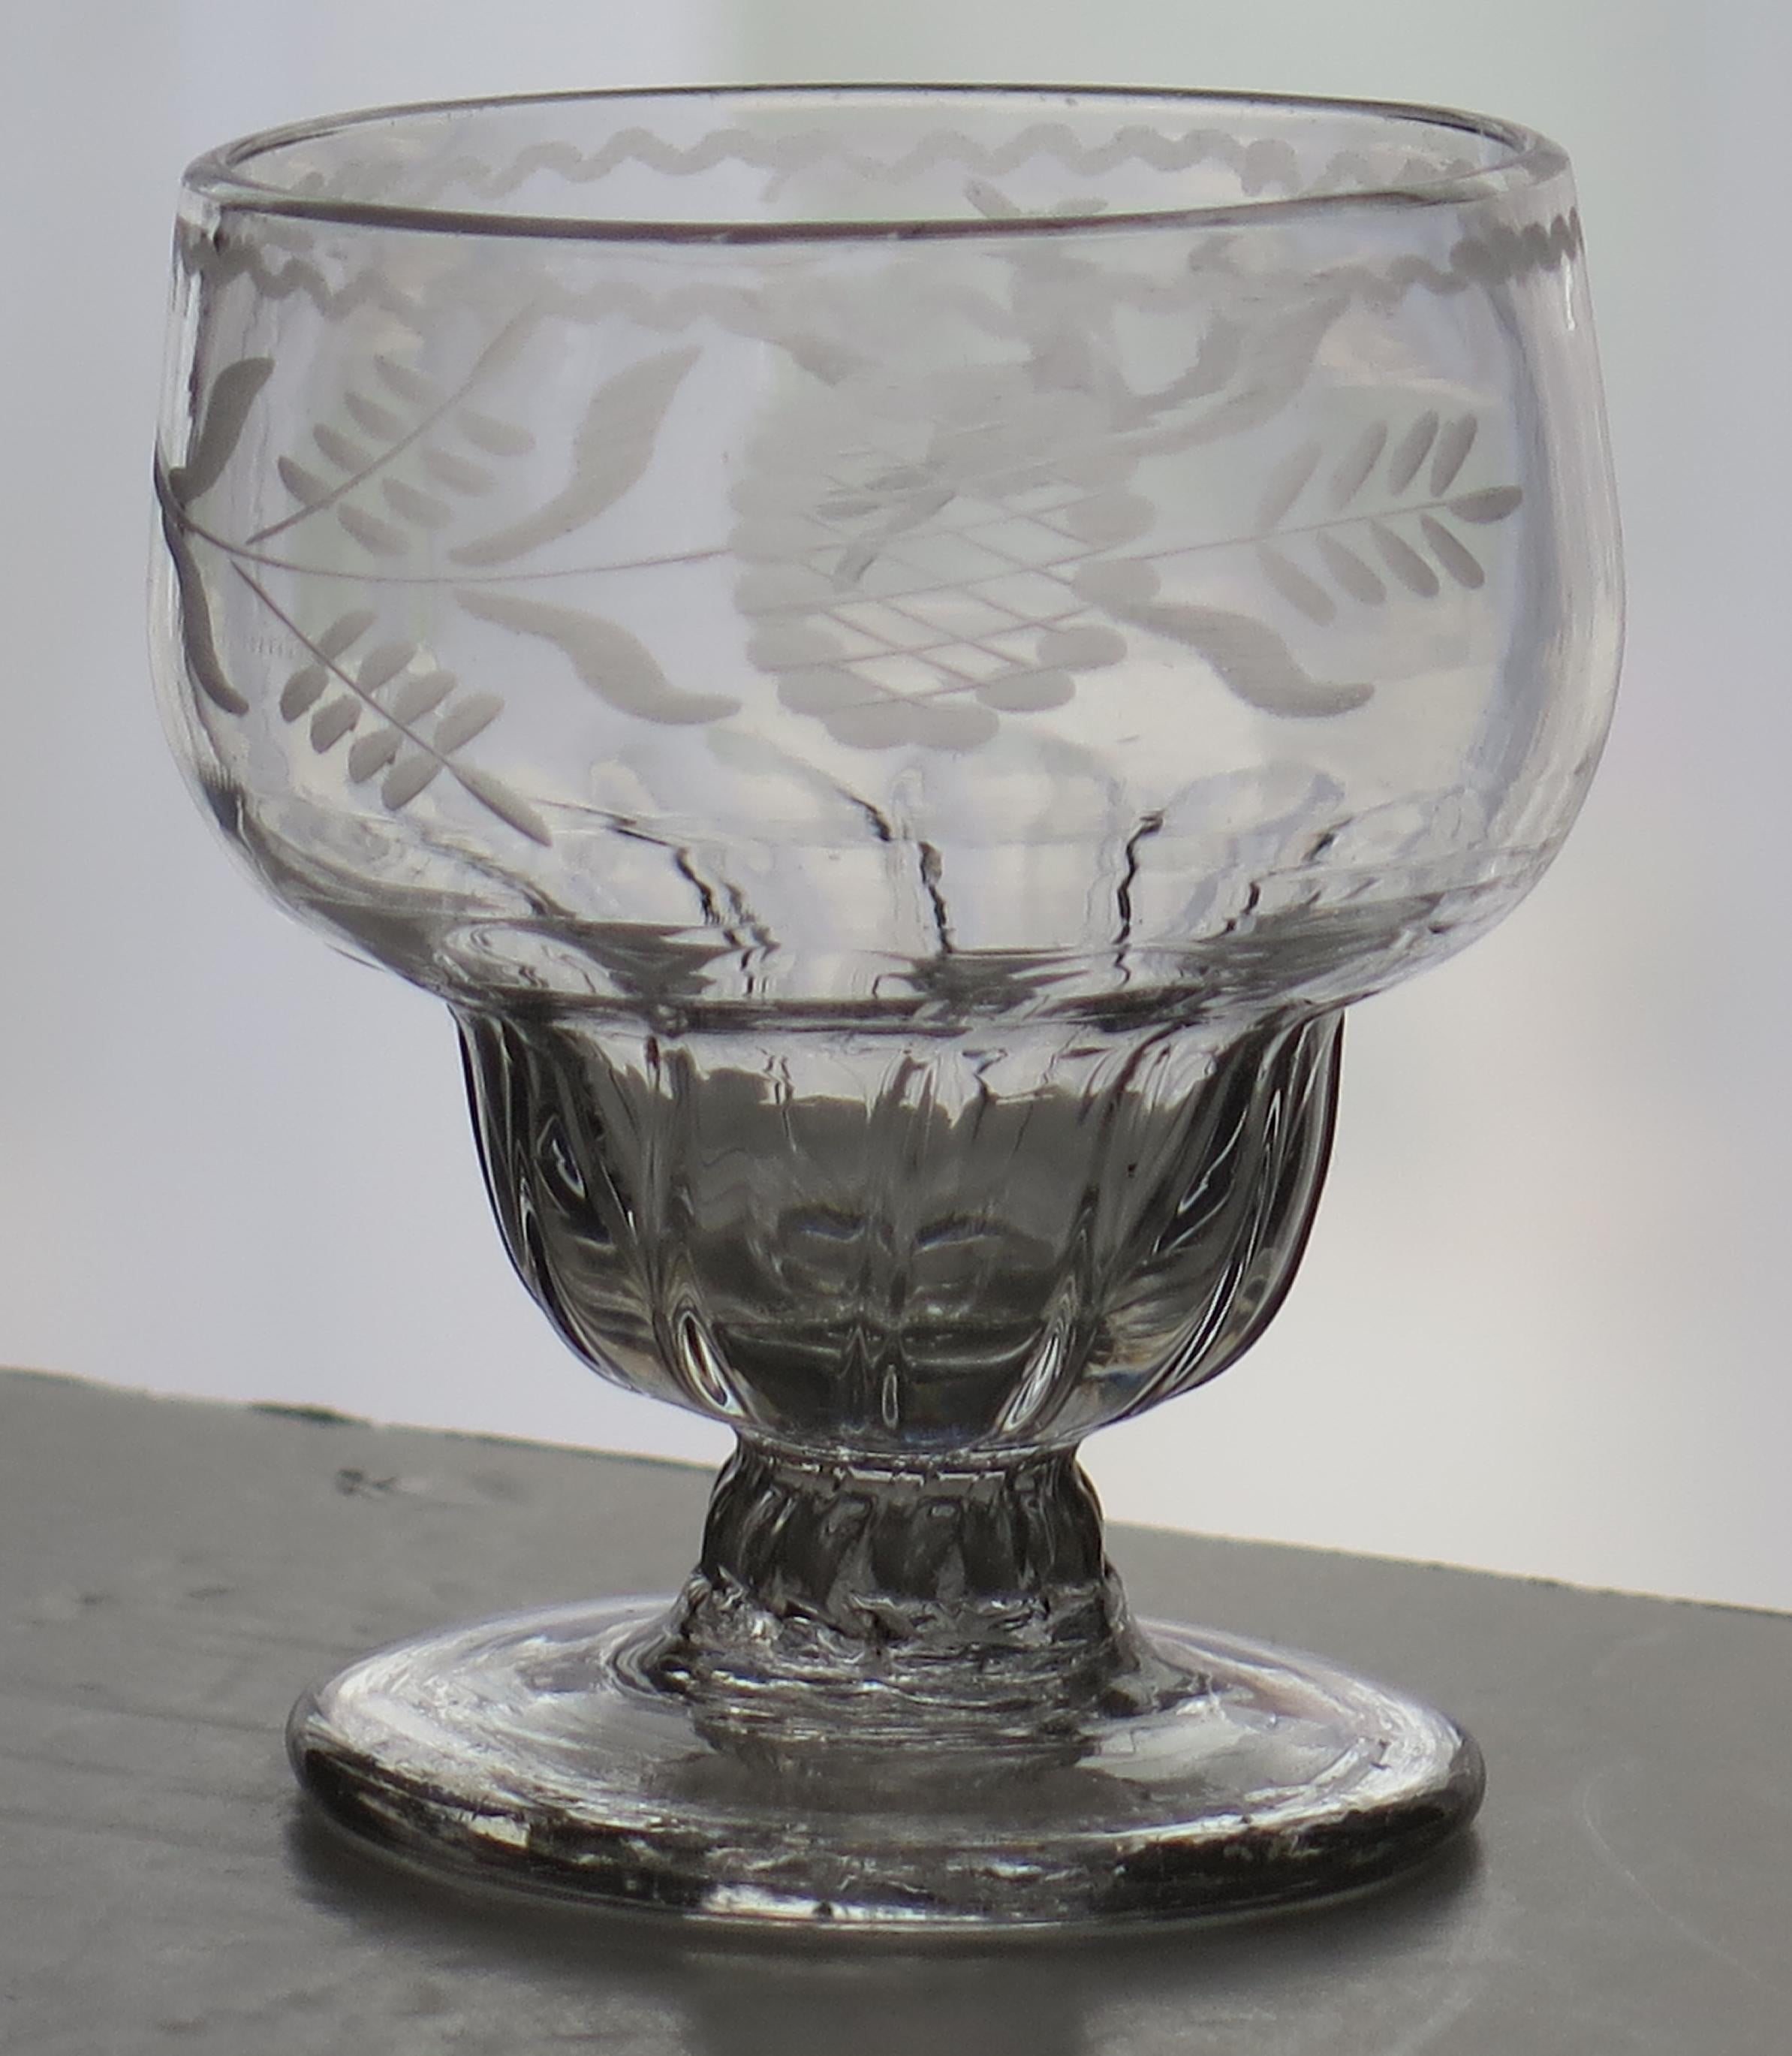 Il s'agit d'un très bon verre à chapeau soufflé à la main, anglais, du milieu de l'époque géorgienne, Monteith ou Bonnet, datant du milieu du XVIIIe siècle, vers 1750.

Elle est fabriquée en verre au plomb anglais relativement lourd et a une